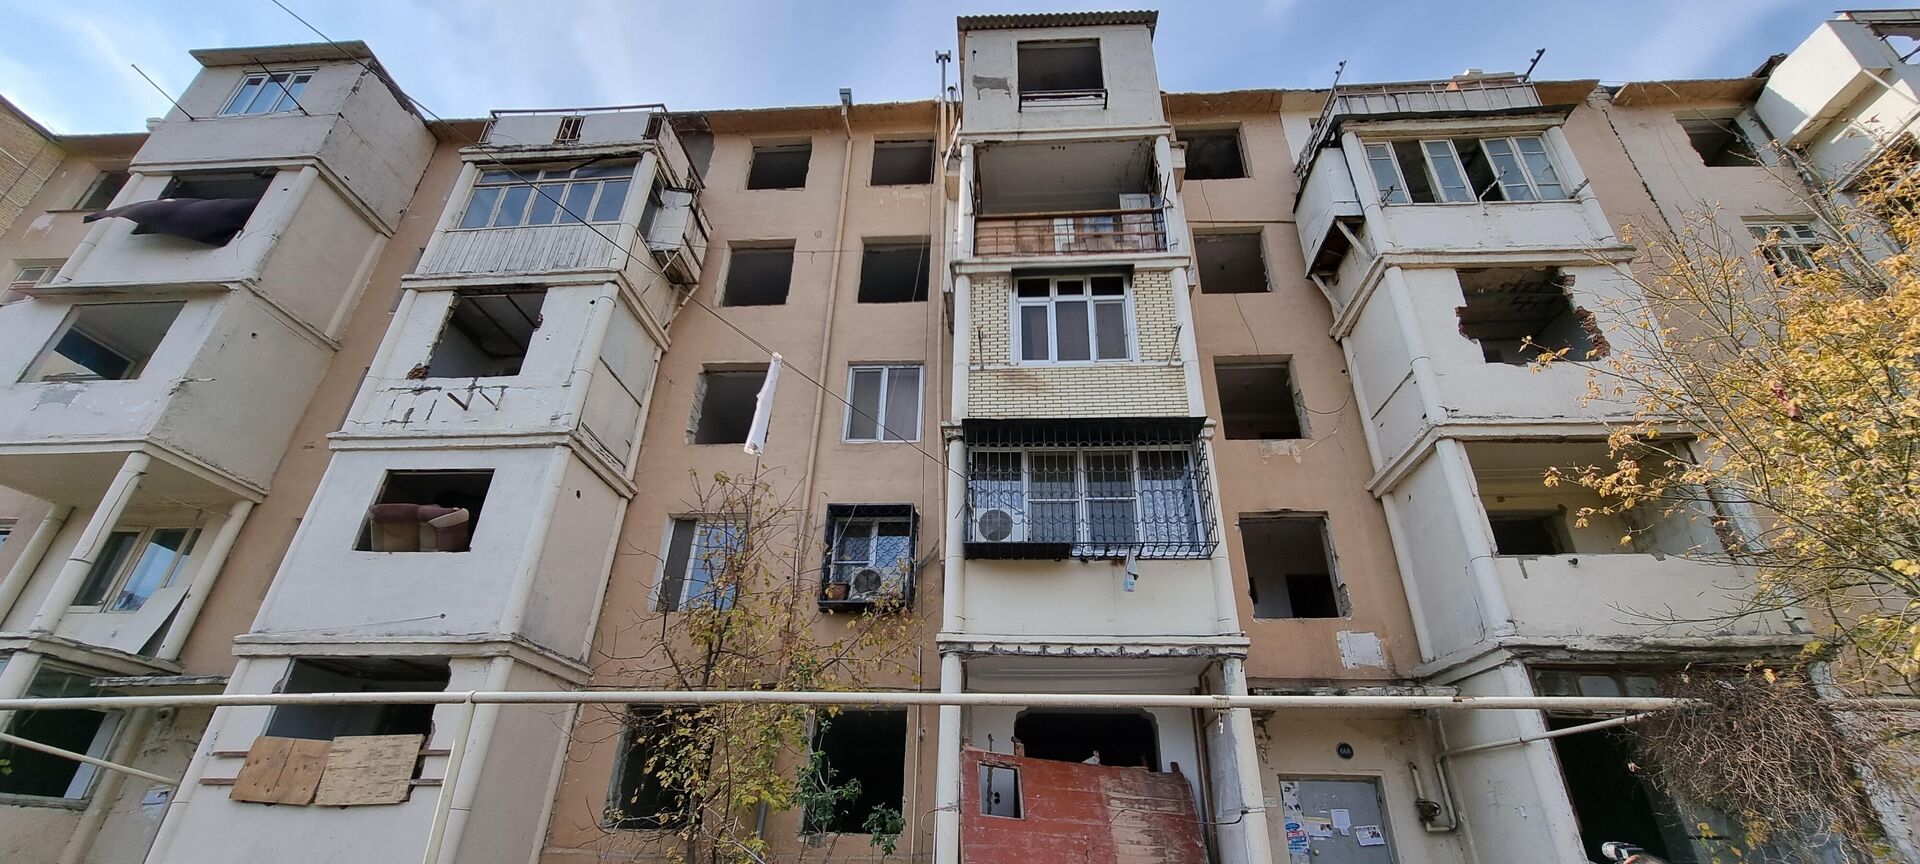 Пятиэтажное здание на перекрестке улиц Аббаса Мирзы Шарифзаде и Исмаила Талыблы - Sputnik Азербайджан, 1920, 15.11.2021